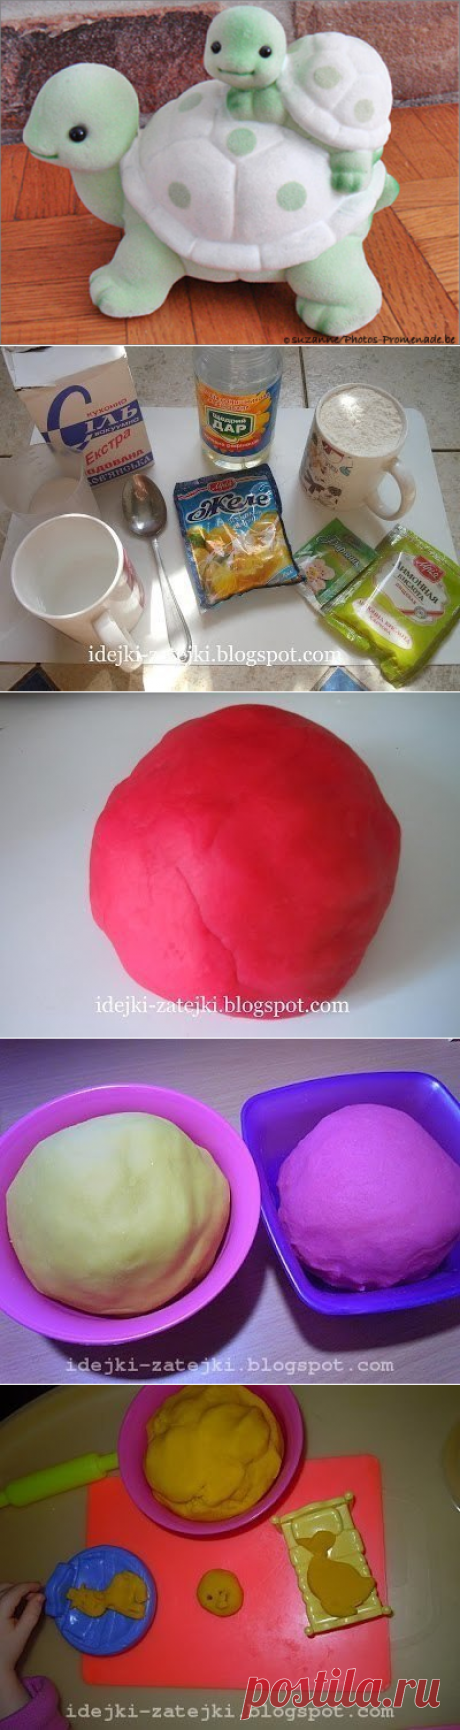 Рецепт желейного теста для лепки по типу Play-Doh.